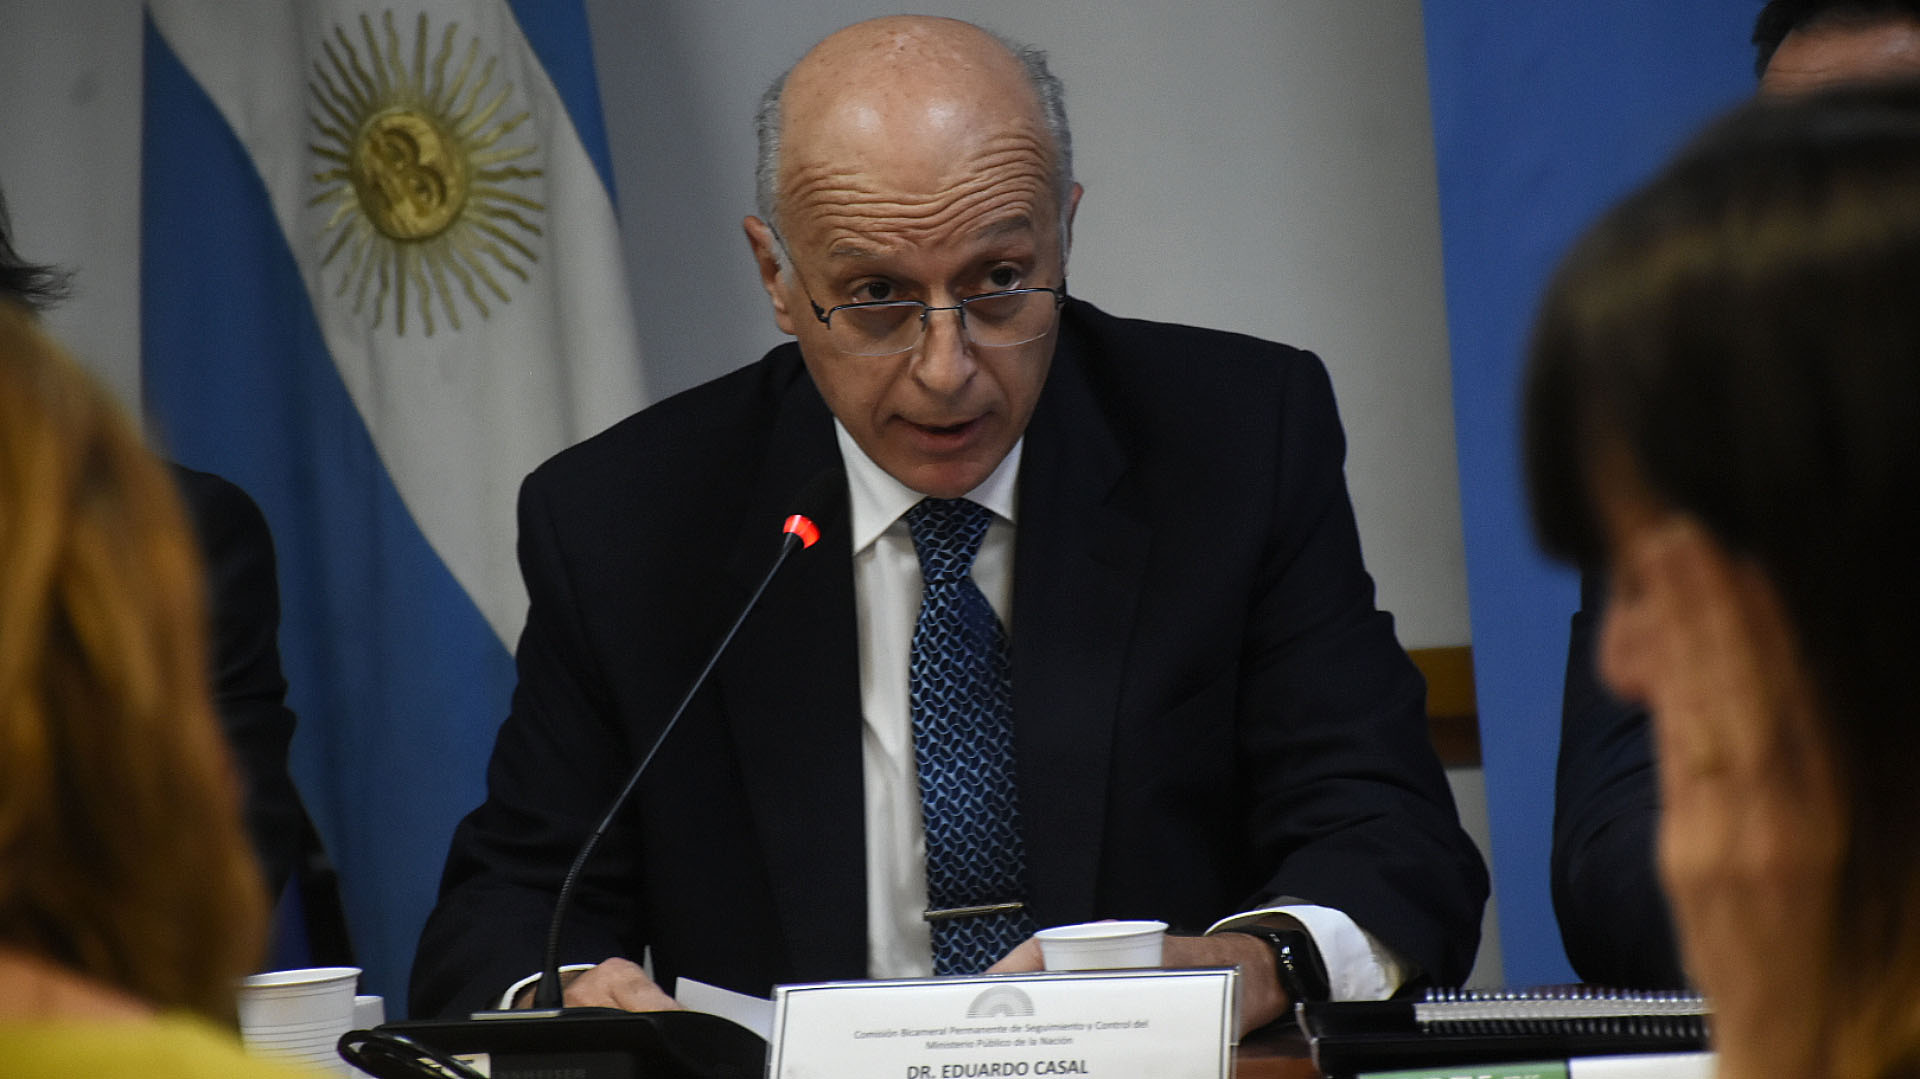 El procurador Casal rechazó un planteo de Macri en la causa por el Correo